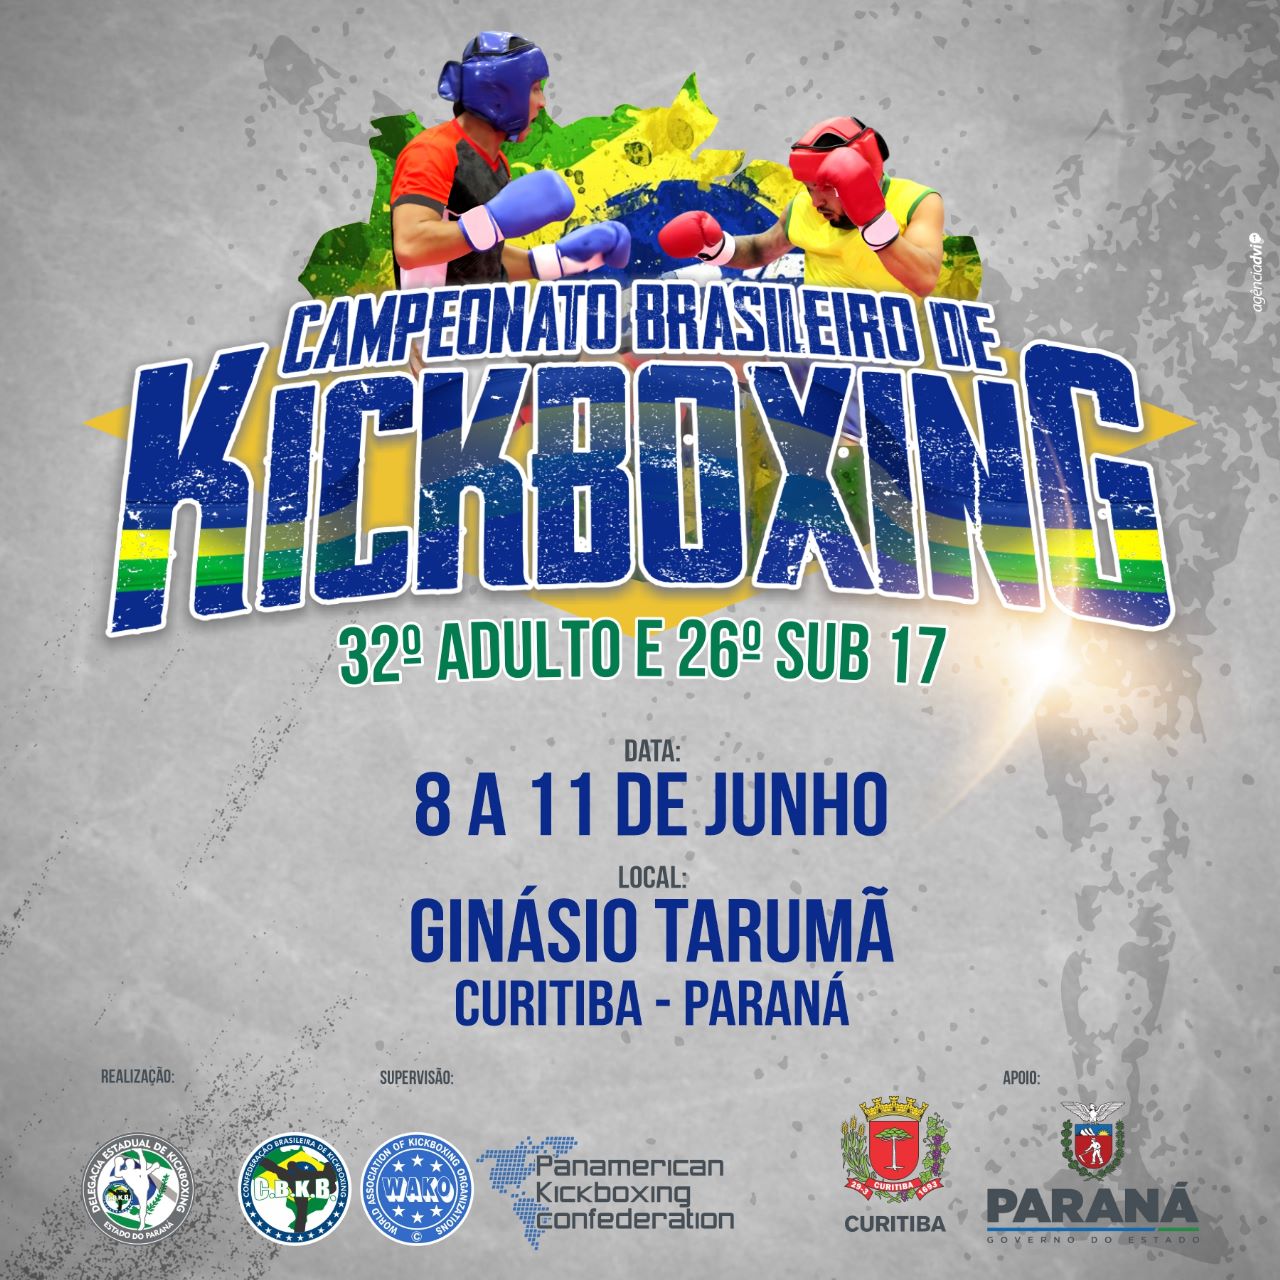 32° Campeonato Brasileiro de Kickboxing Adulto e 26° Campeonato Brasileiro de Kickboxing Sub 17